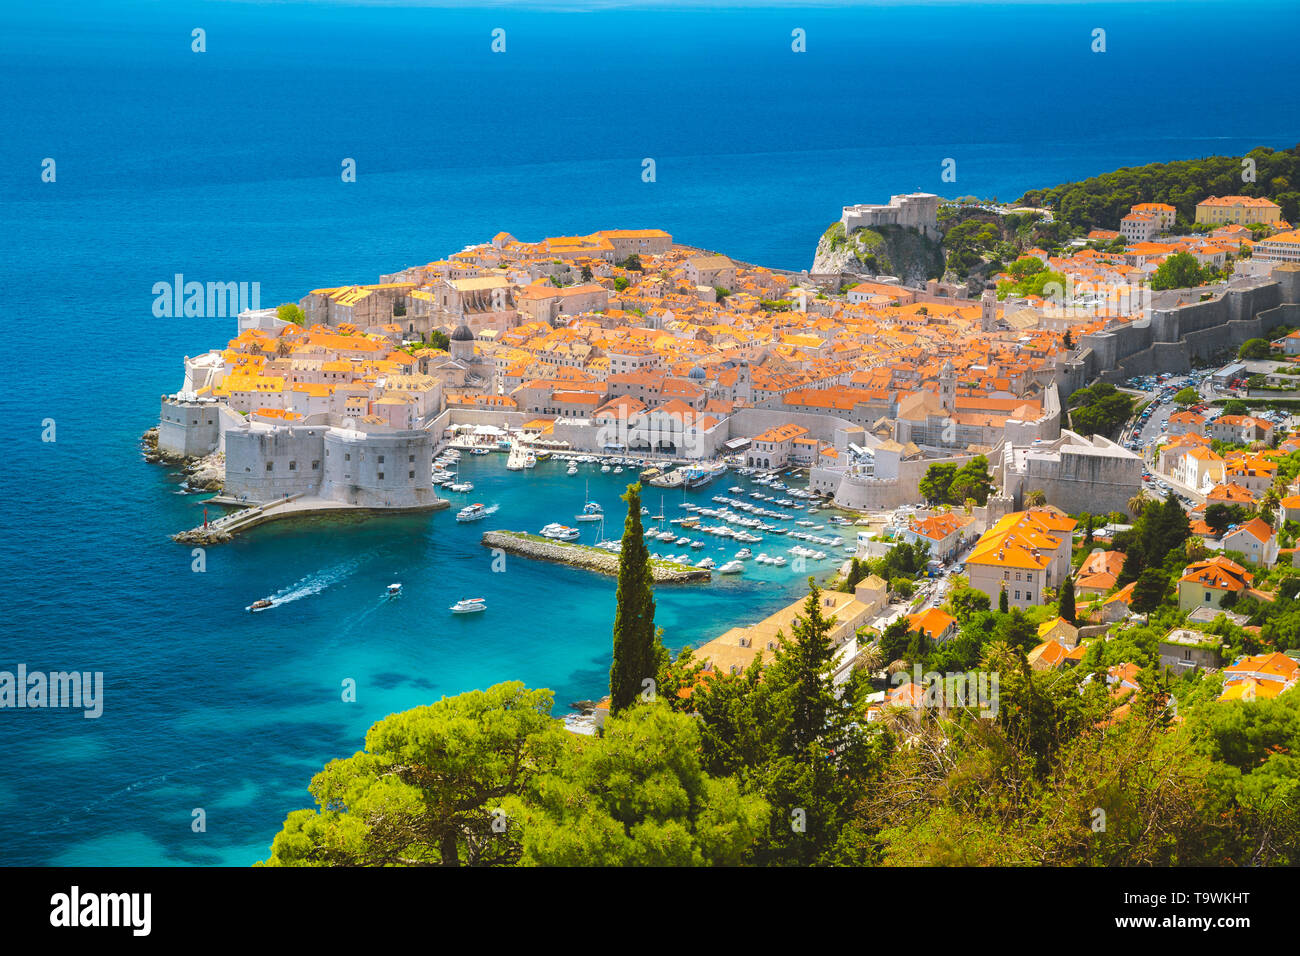 Vista aérea panorámica del casco histórico de la ciudad de Dubrovnik, uno de los más famosos destinos turísticos en el Mar Mediterráneo, a partir de la ter sobre una montaña Foto de stock